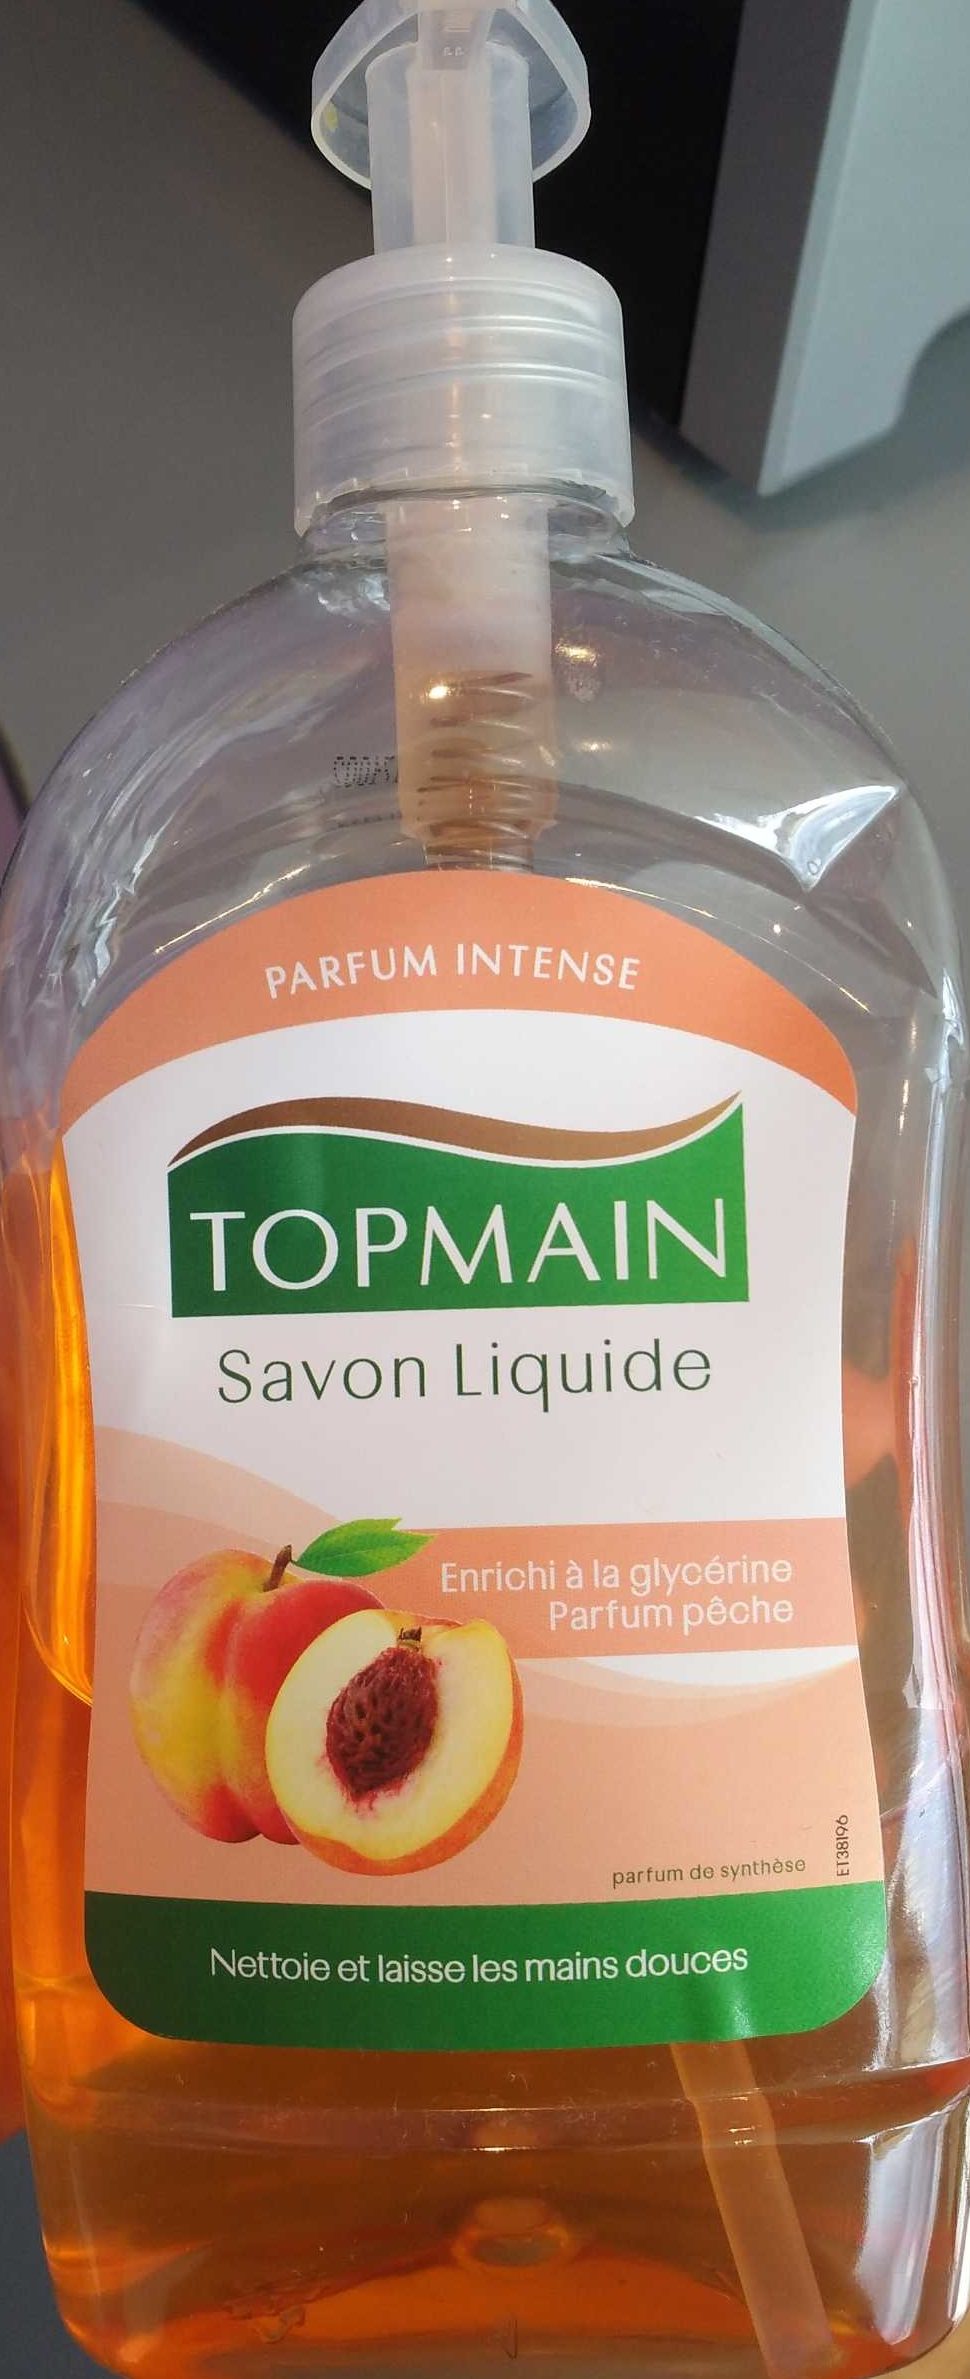 Savon liquide parfum pêche - Product - fr